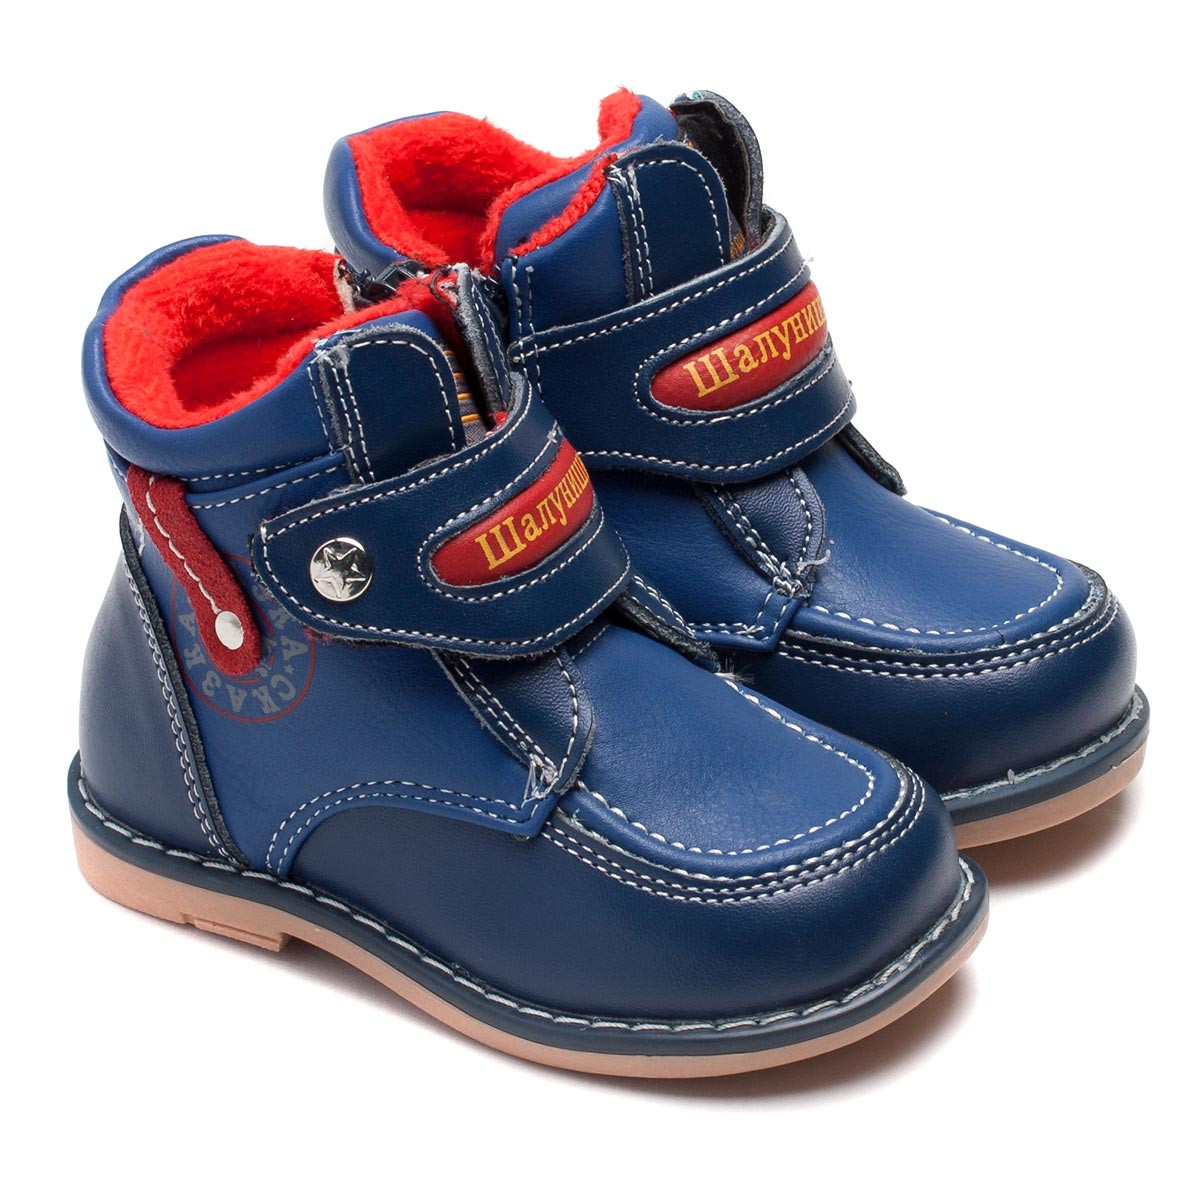 Детские ботинки. Детская обувь ботинки Фаворит g12518. Ботинки для мальчика демисезонные. Ботинки детские демисезонные. Детские ботинки для мальчика.